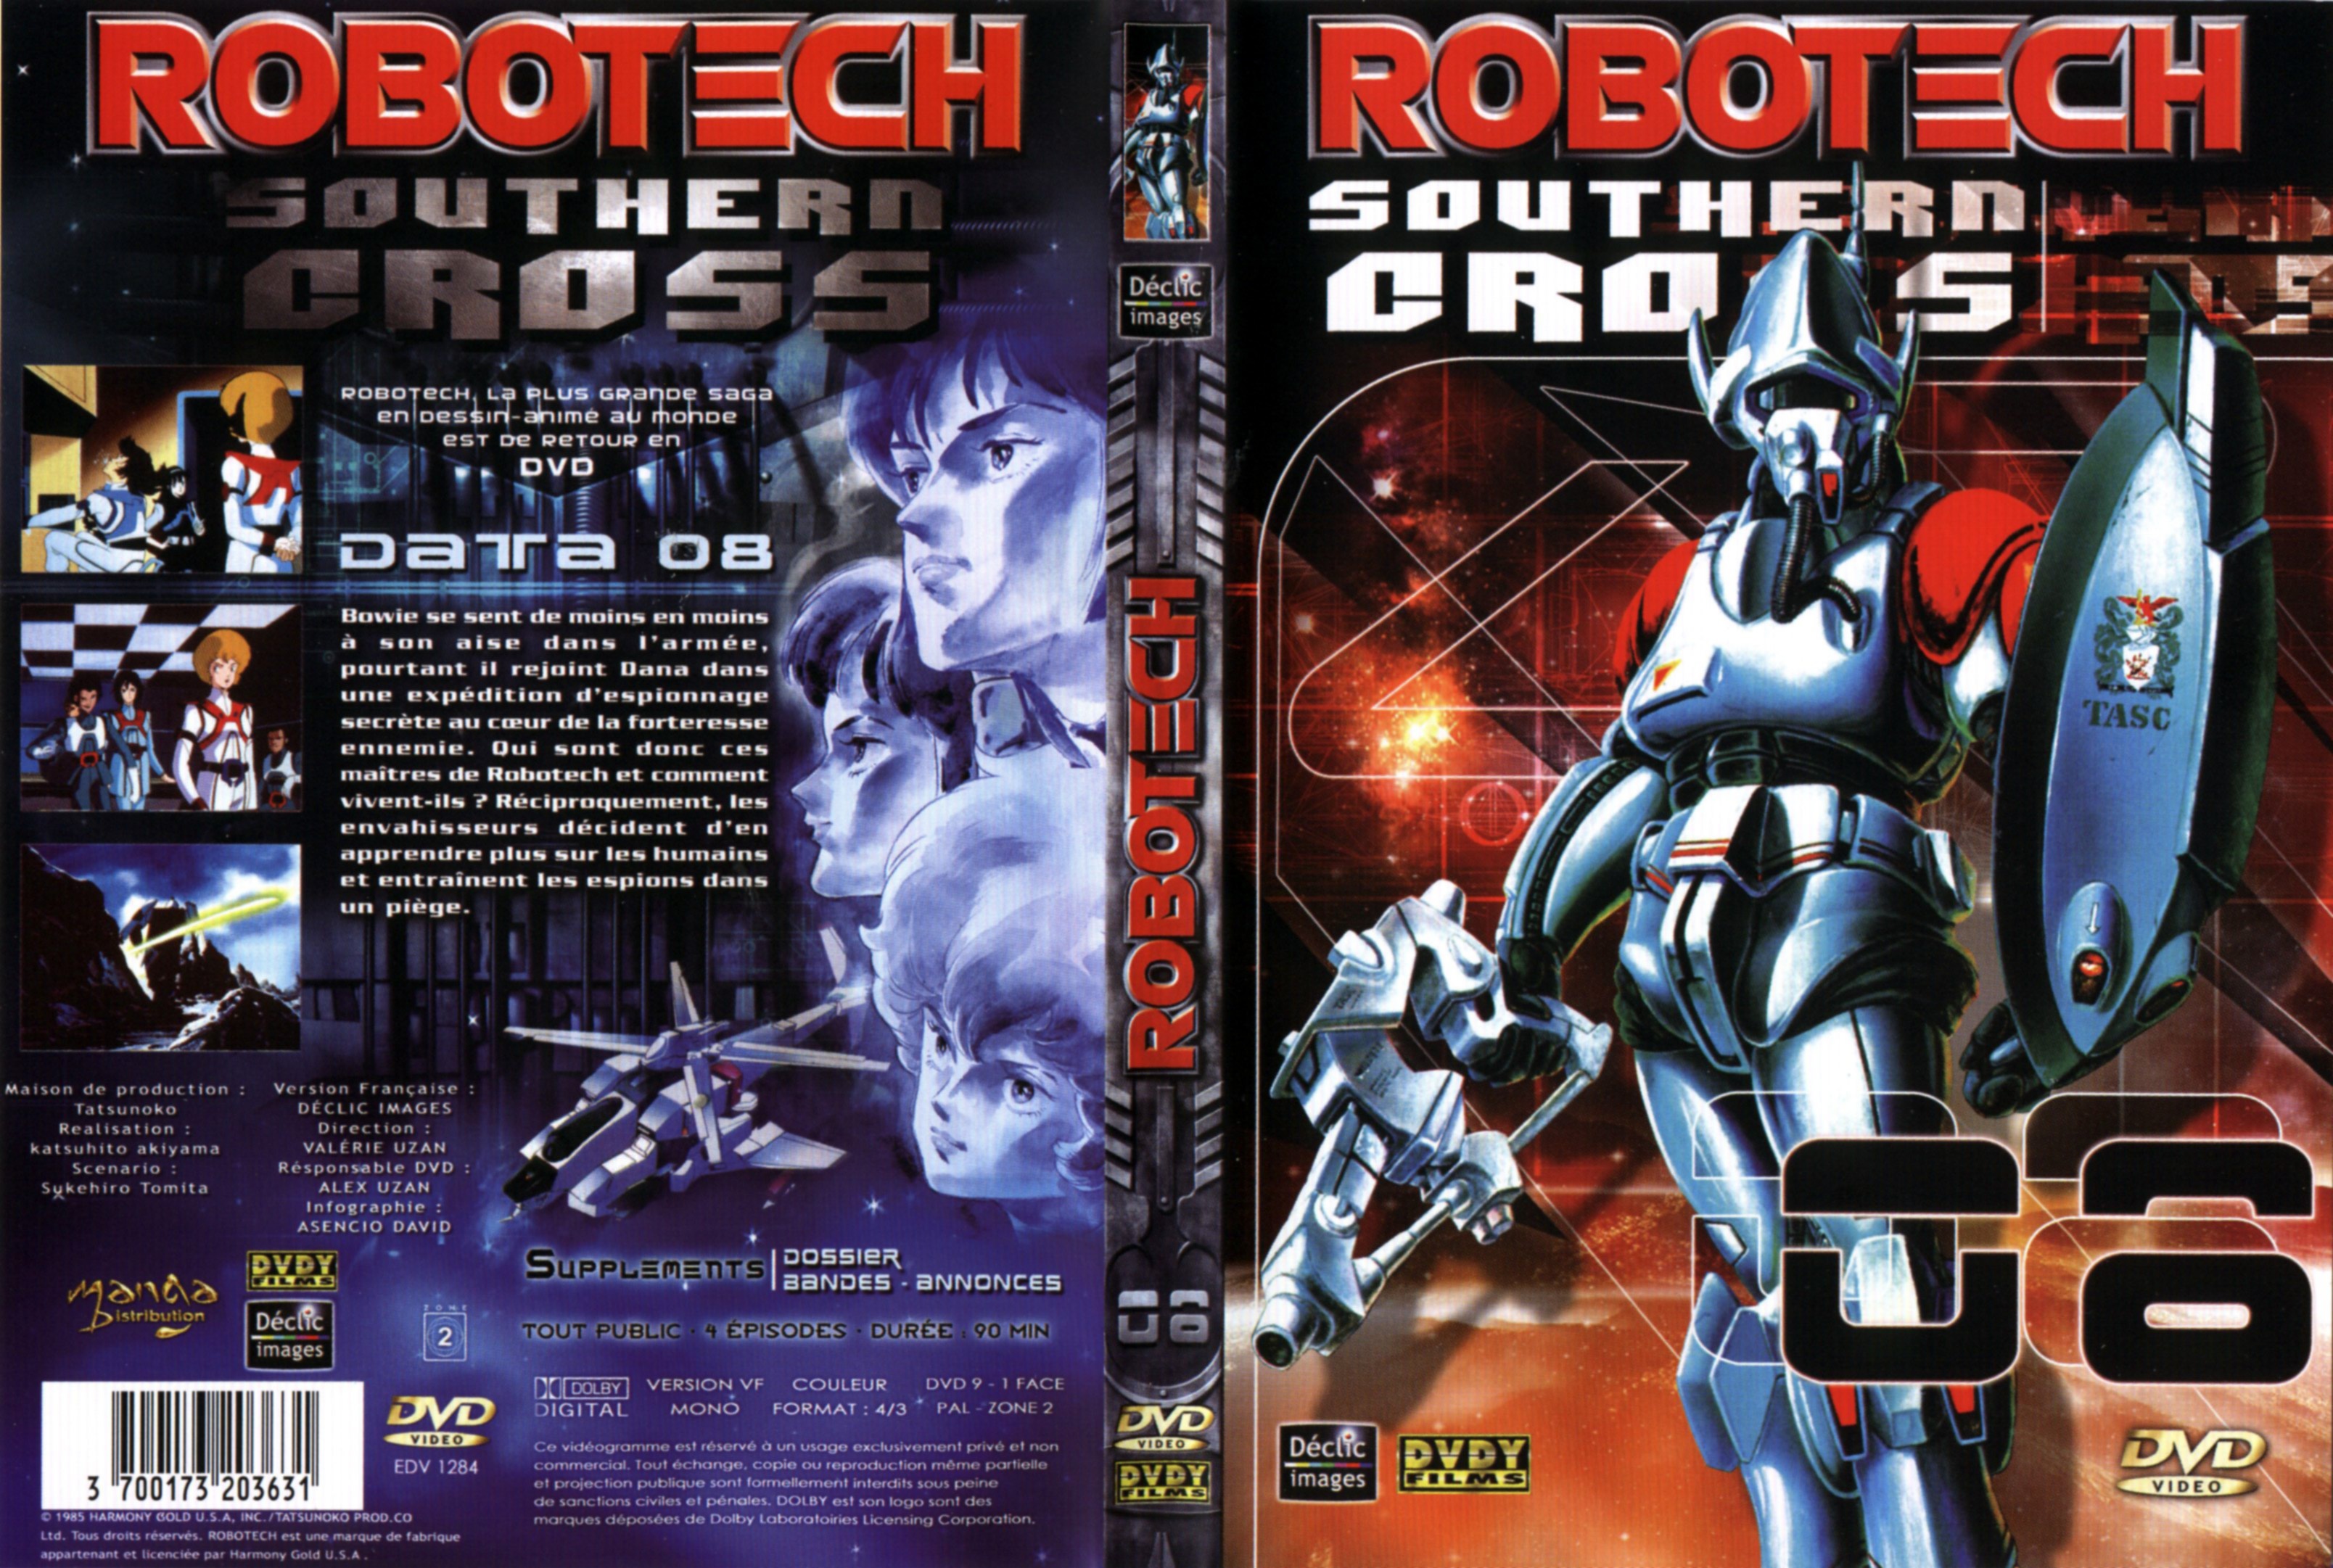 Jaquette DVD Robotech Southern cross vol 08